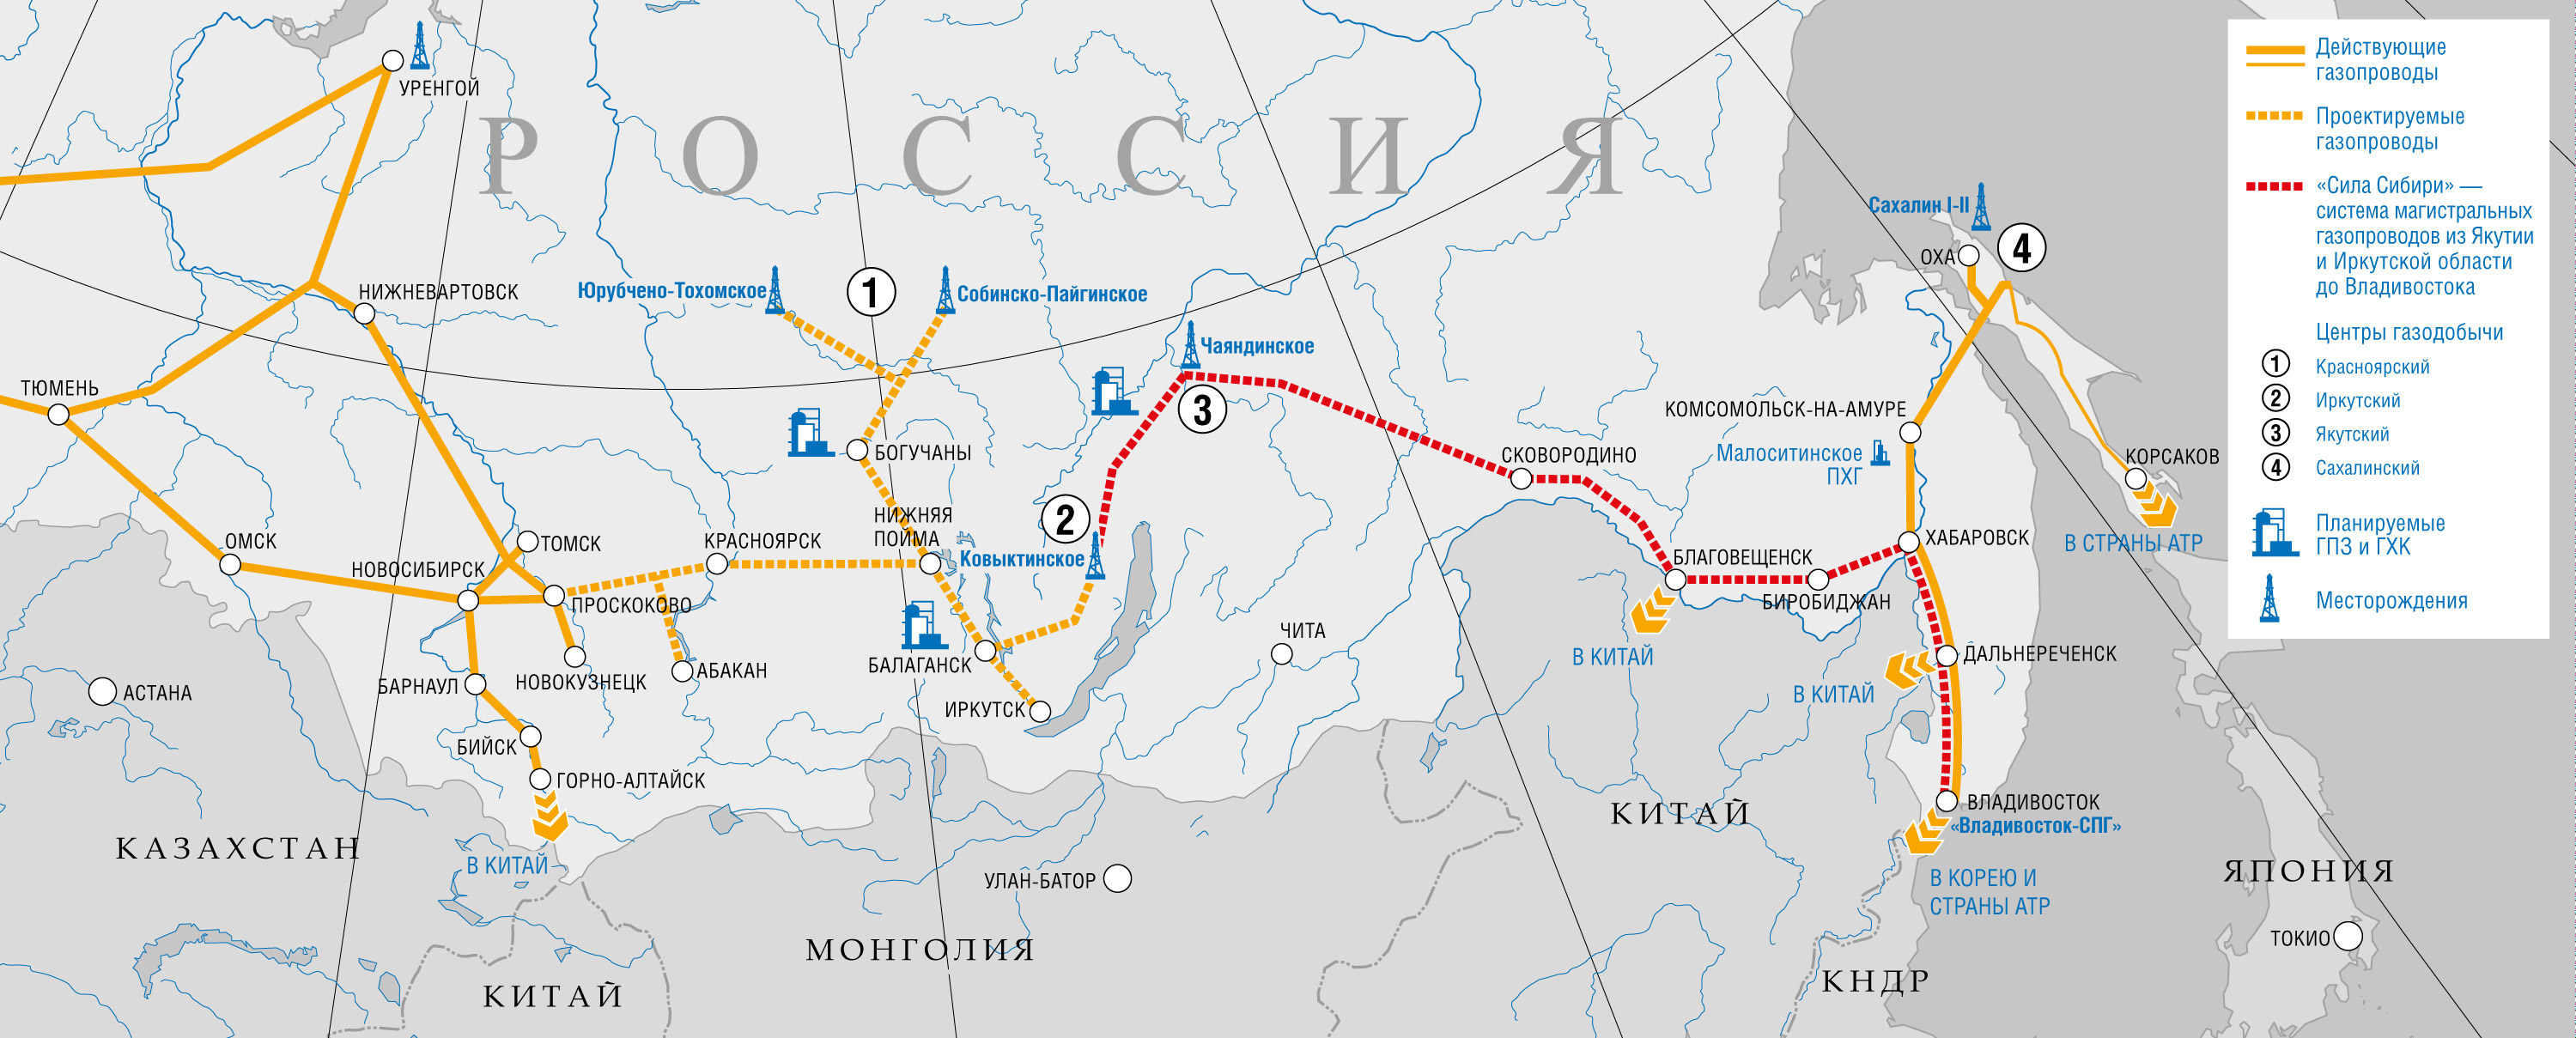 карта газопровода из России в Китай - Сила Сибири